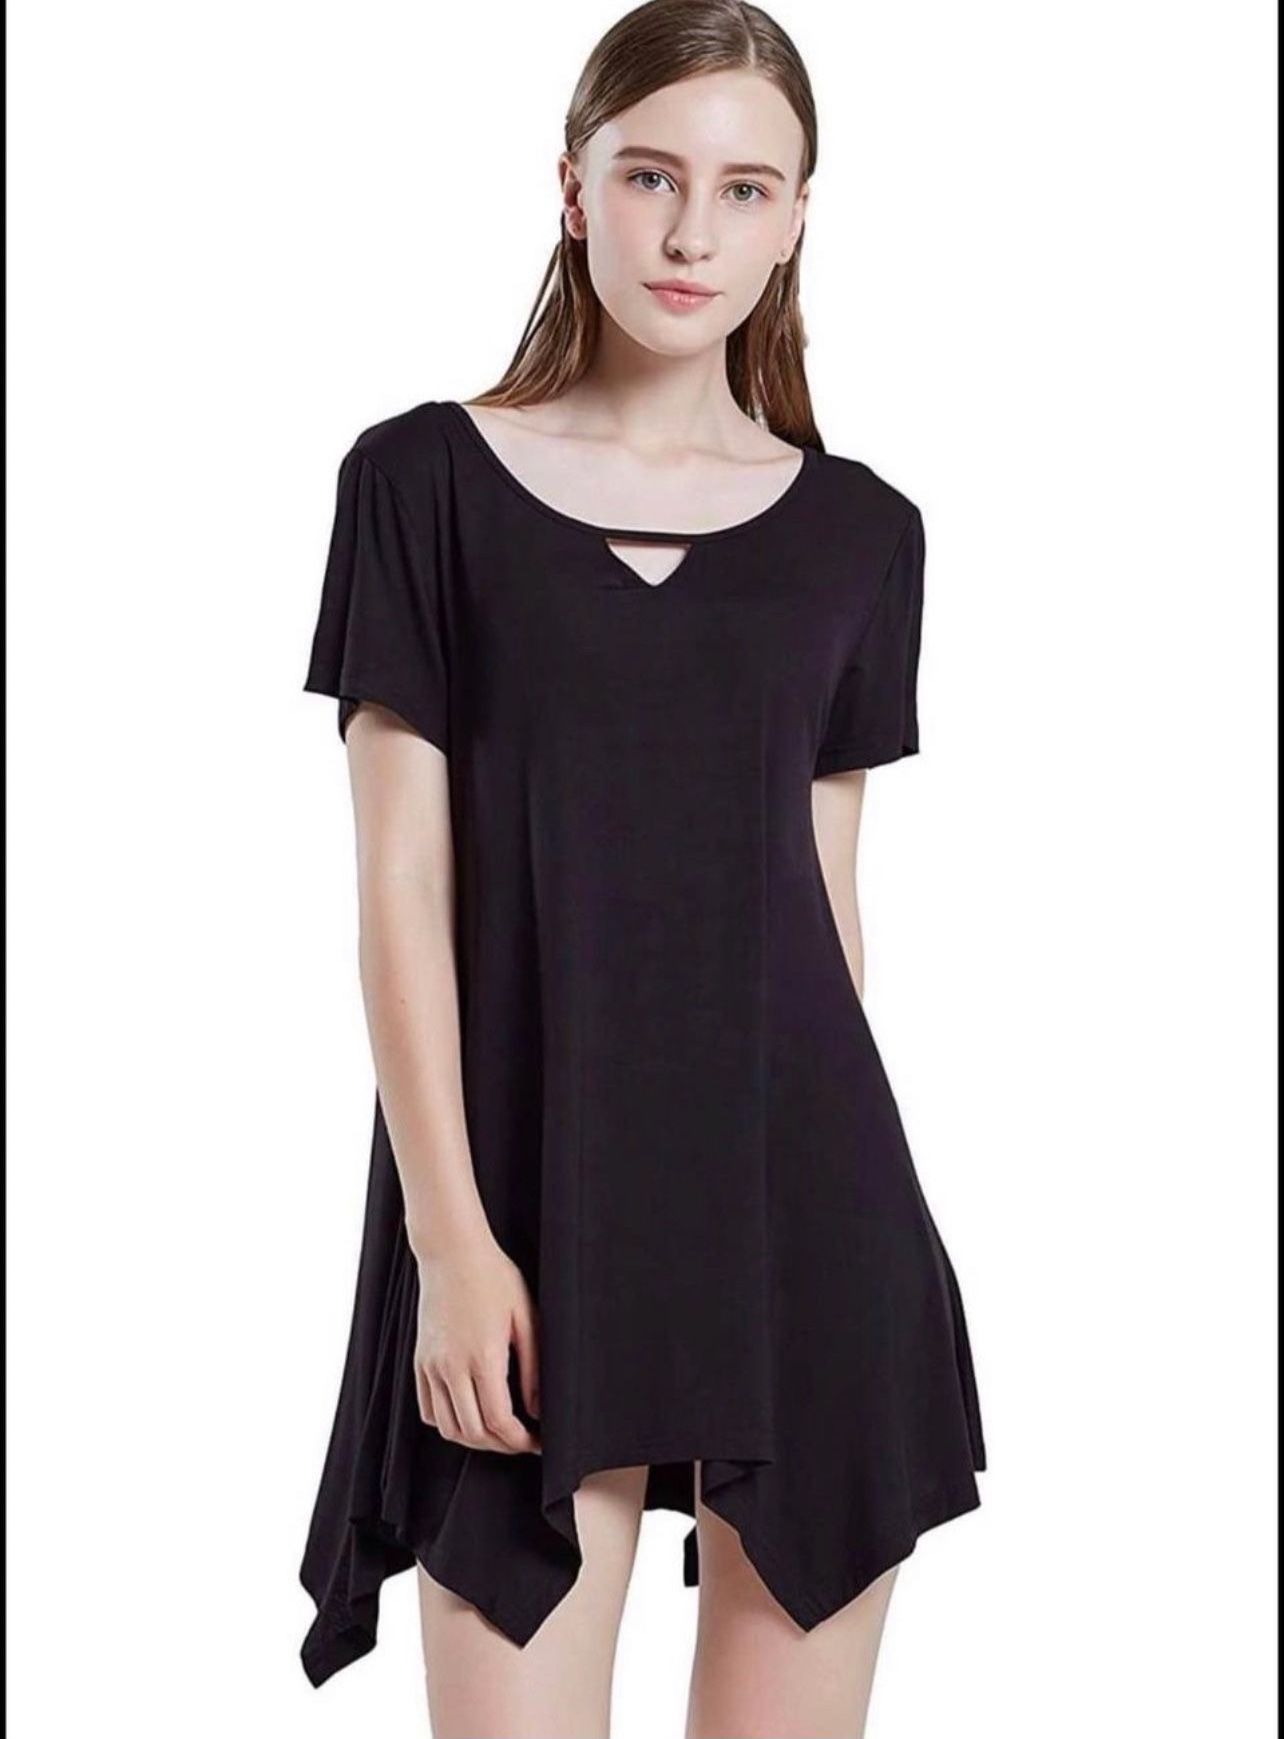 Brandnew Sleepwear Women's Nightshirts Scoop Neck Sleep Shirt Size(XL)